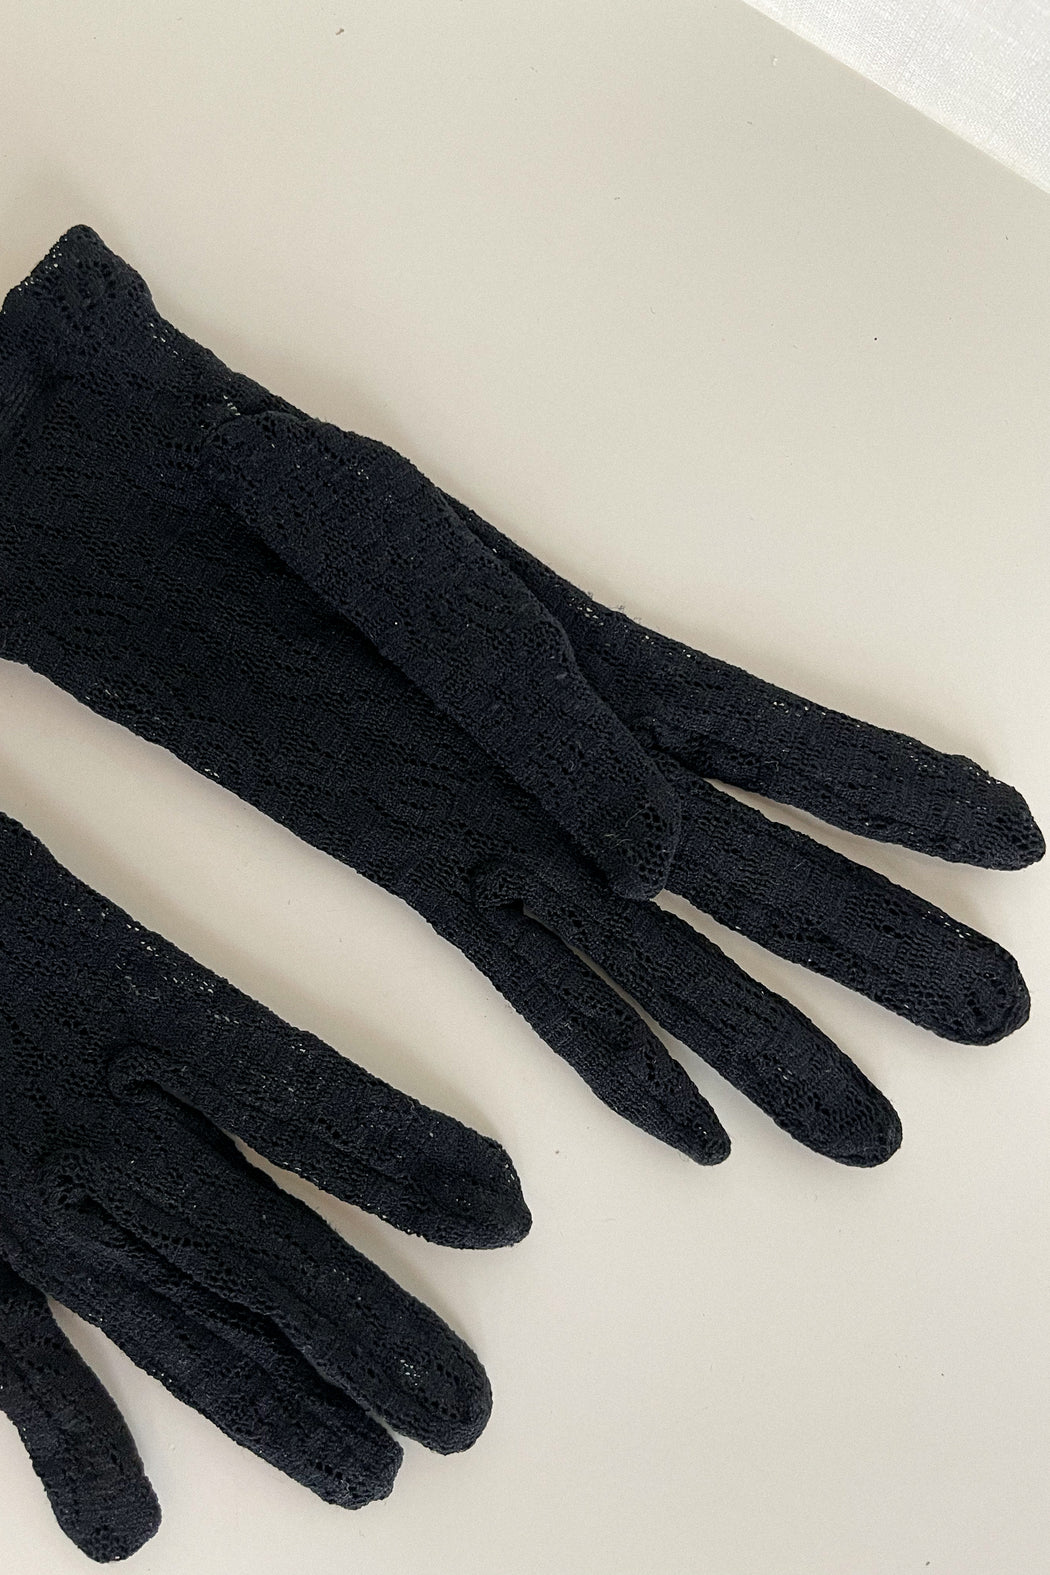 Vintage Black Sheer Lace Gloves